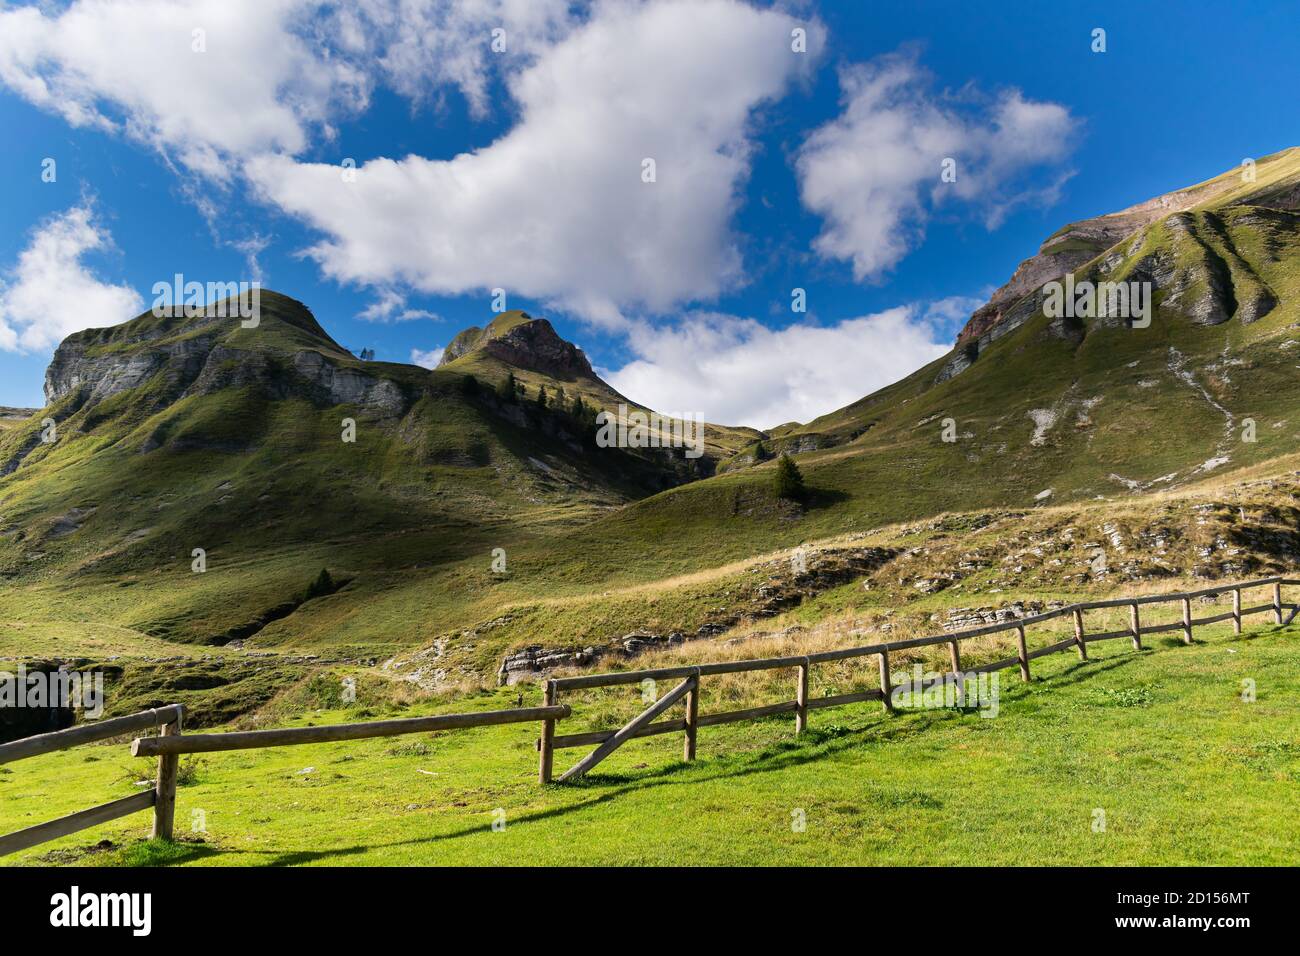 Suggestivo paesaggio montano, cielo blu con nuvole bianche, verdi pendii con una recinzione in legno che confina con il cottage del pastore. Piani eterni, Dolomiti Foto Stock